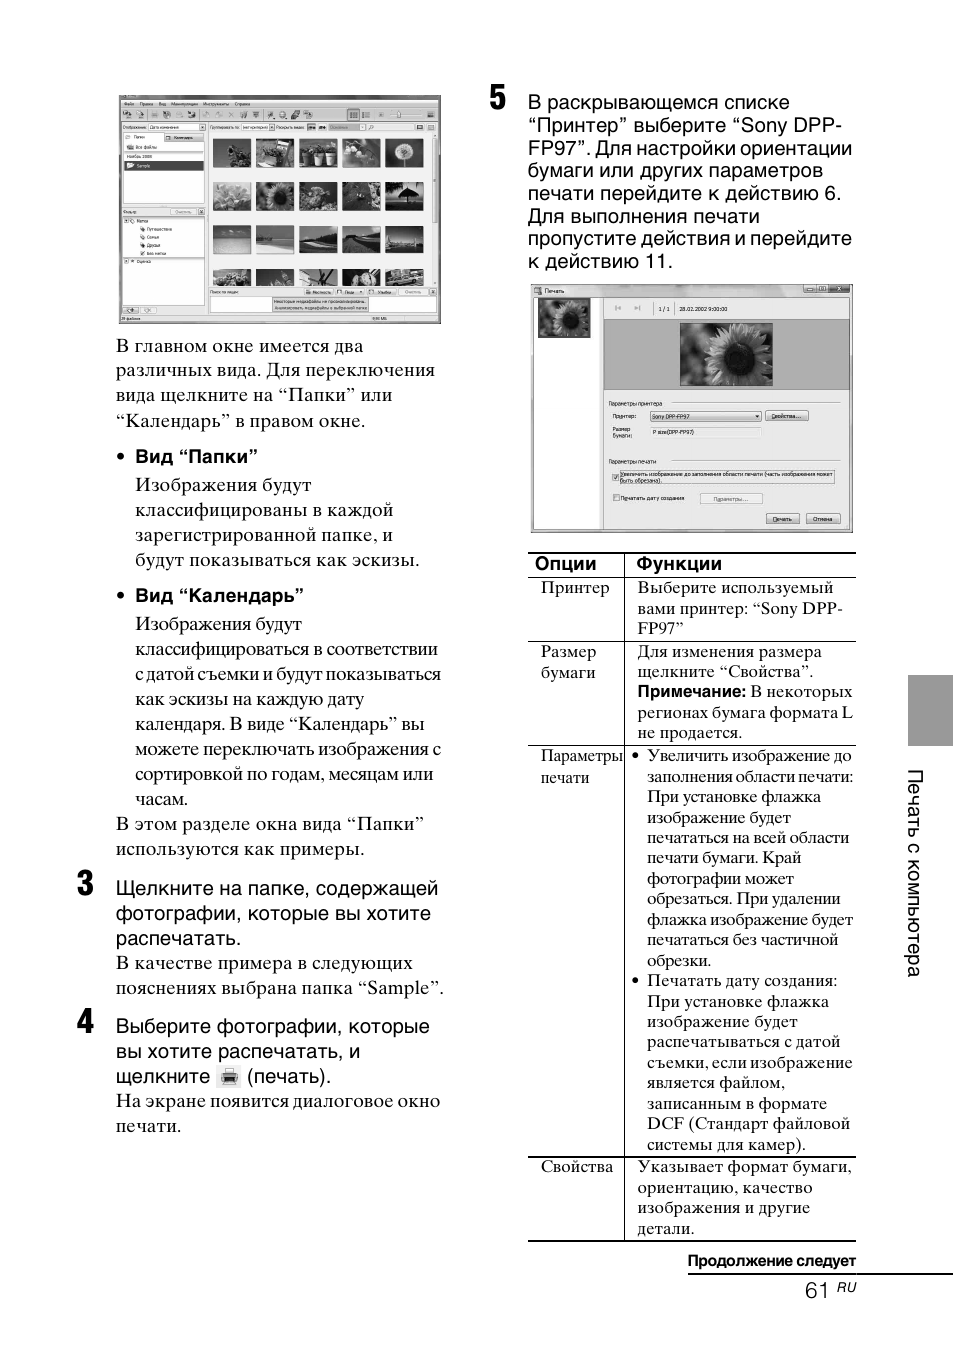 Инструкция по эксплуатации Sony DPP-FP97 | Страница 61 / 92